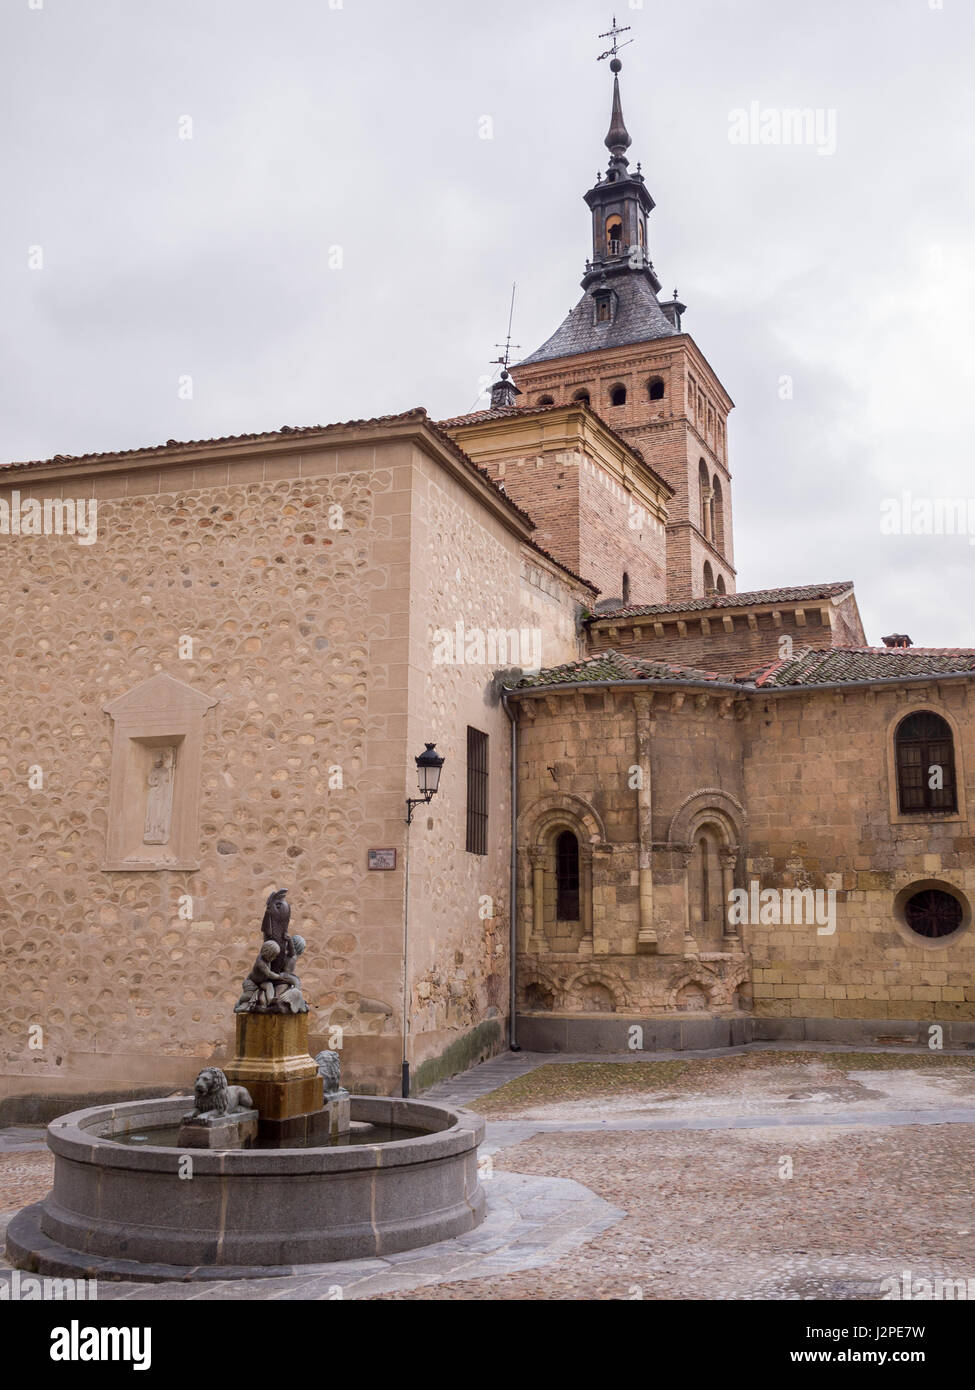 La Iglesia románica de San Martín y fuente de Los Leones en Segovia, Castilla León, España. Foto Stock